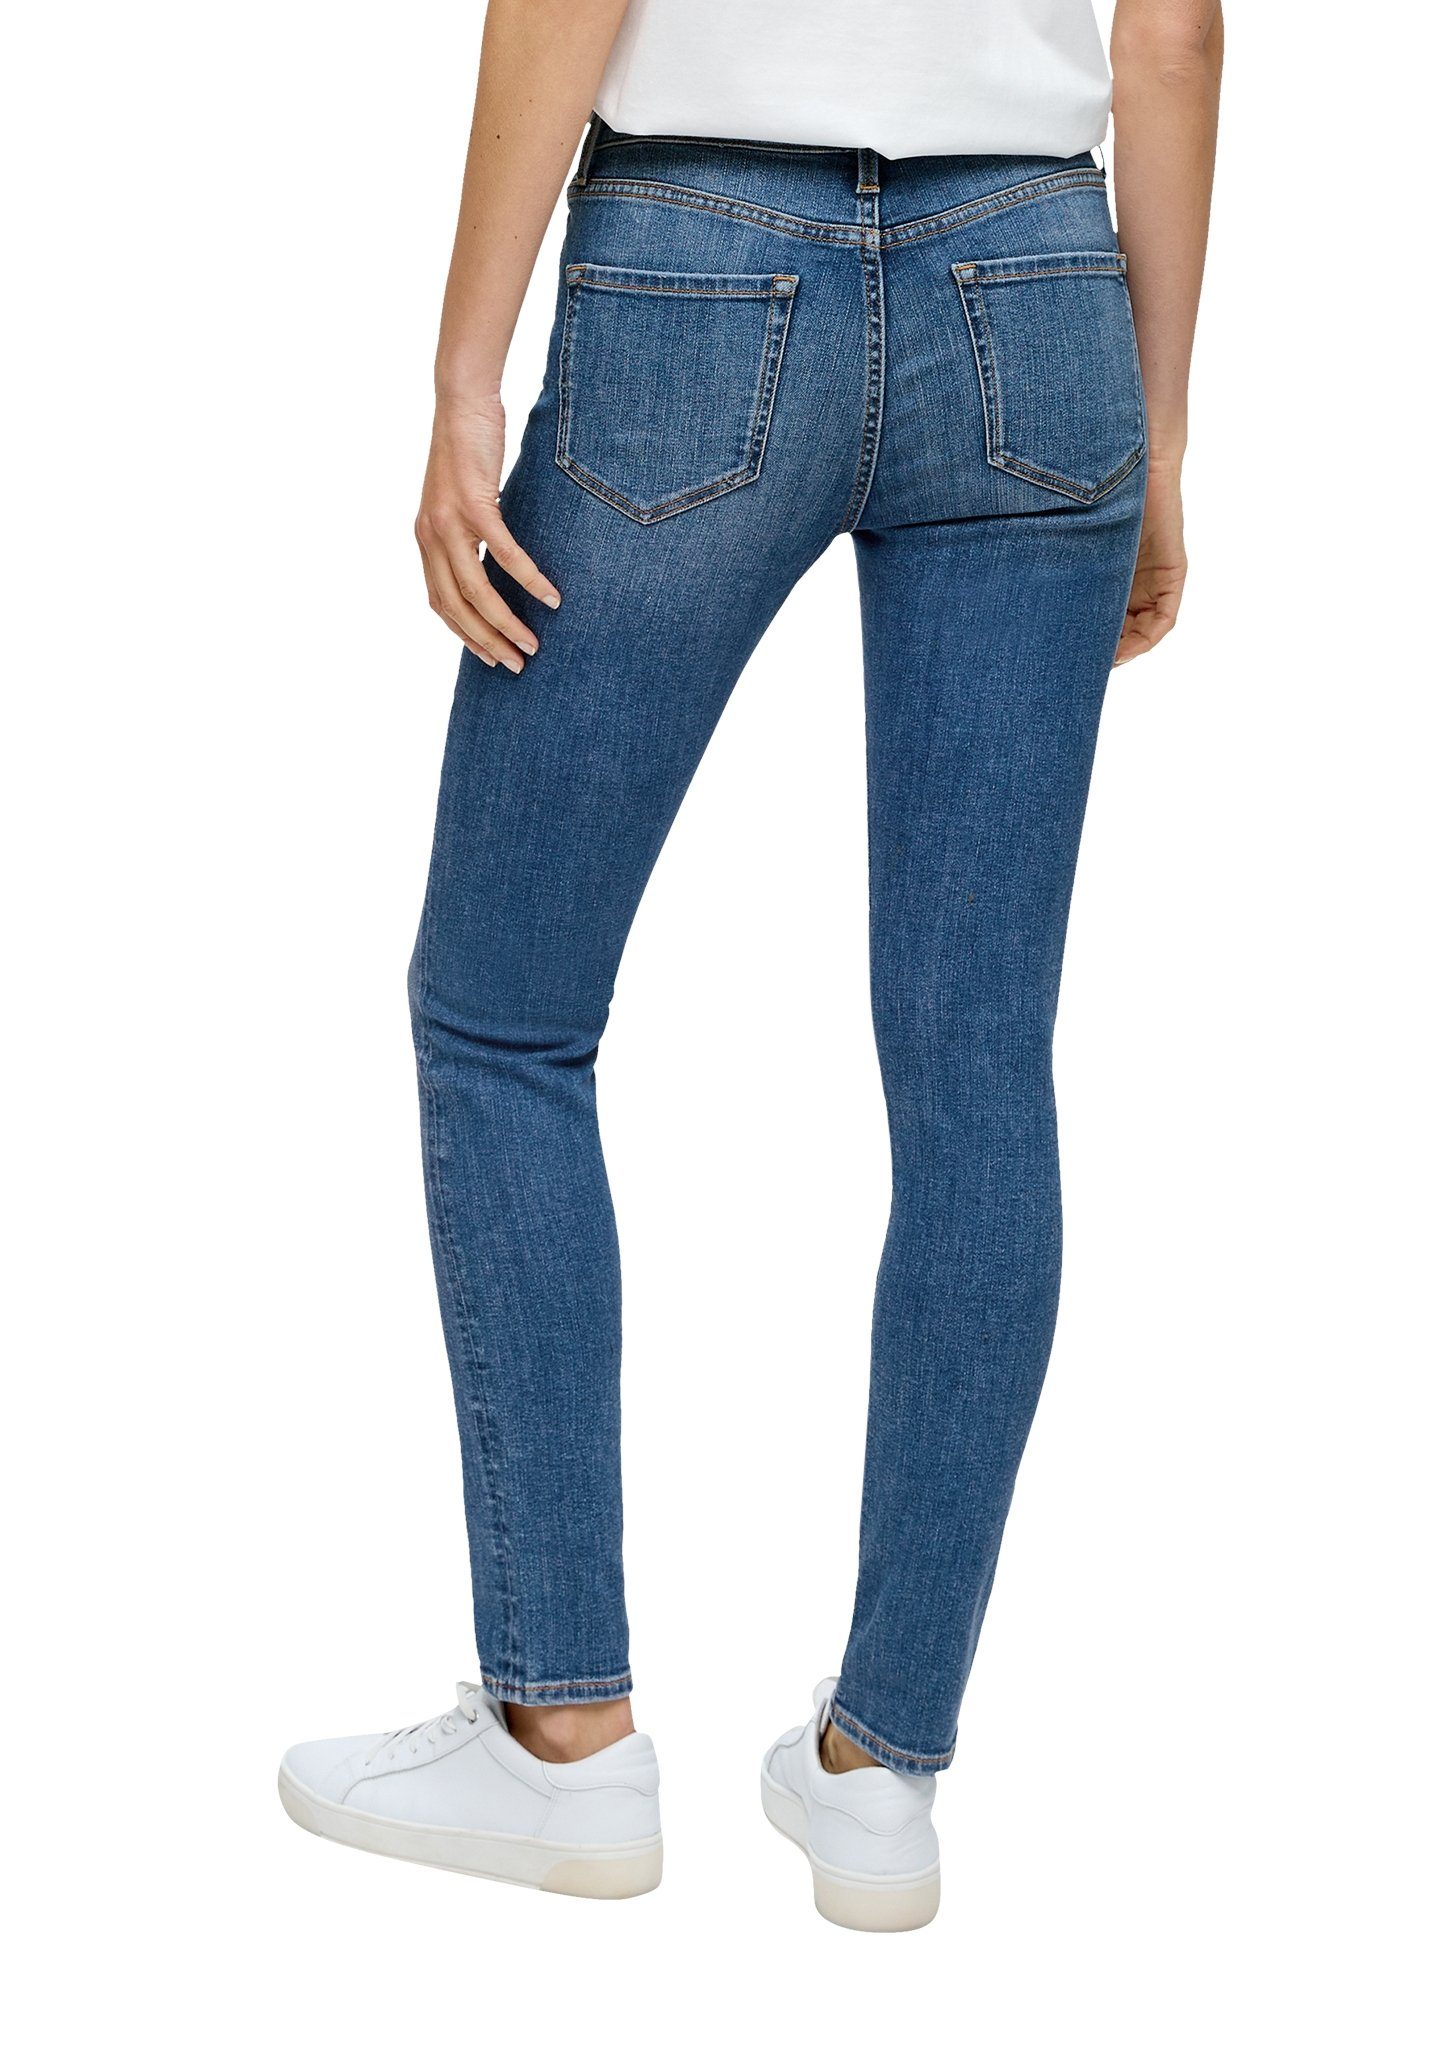 s.Oliver 5-pocket jeans Izabell